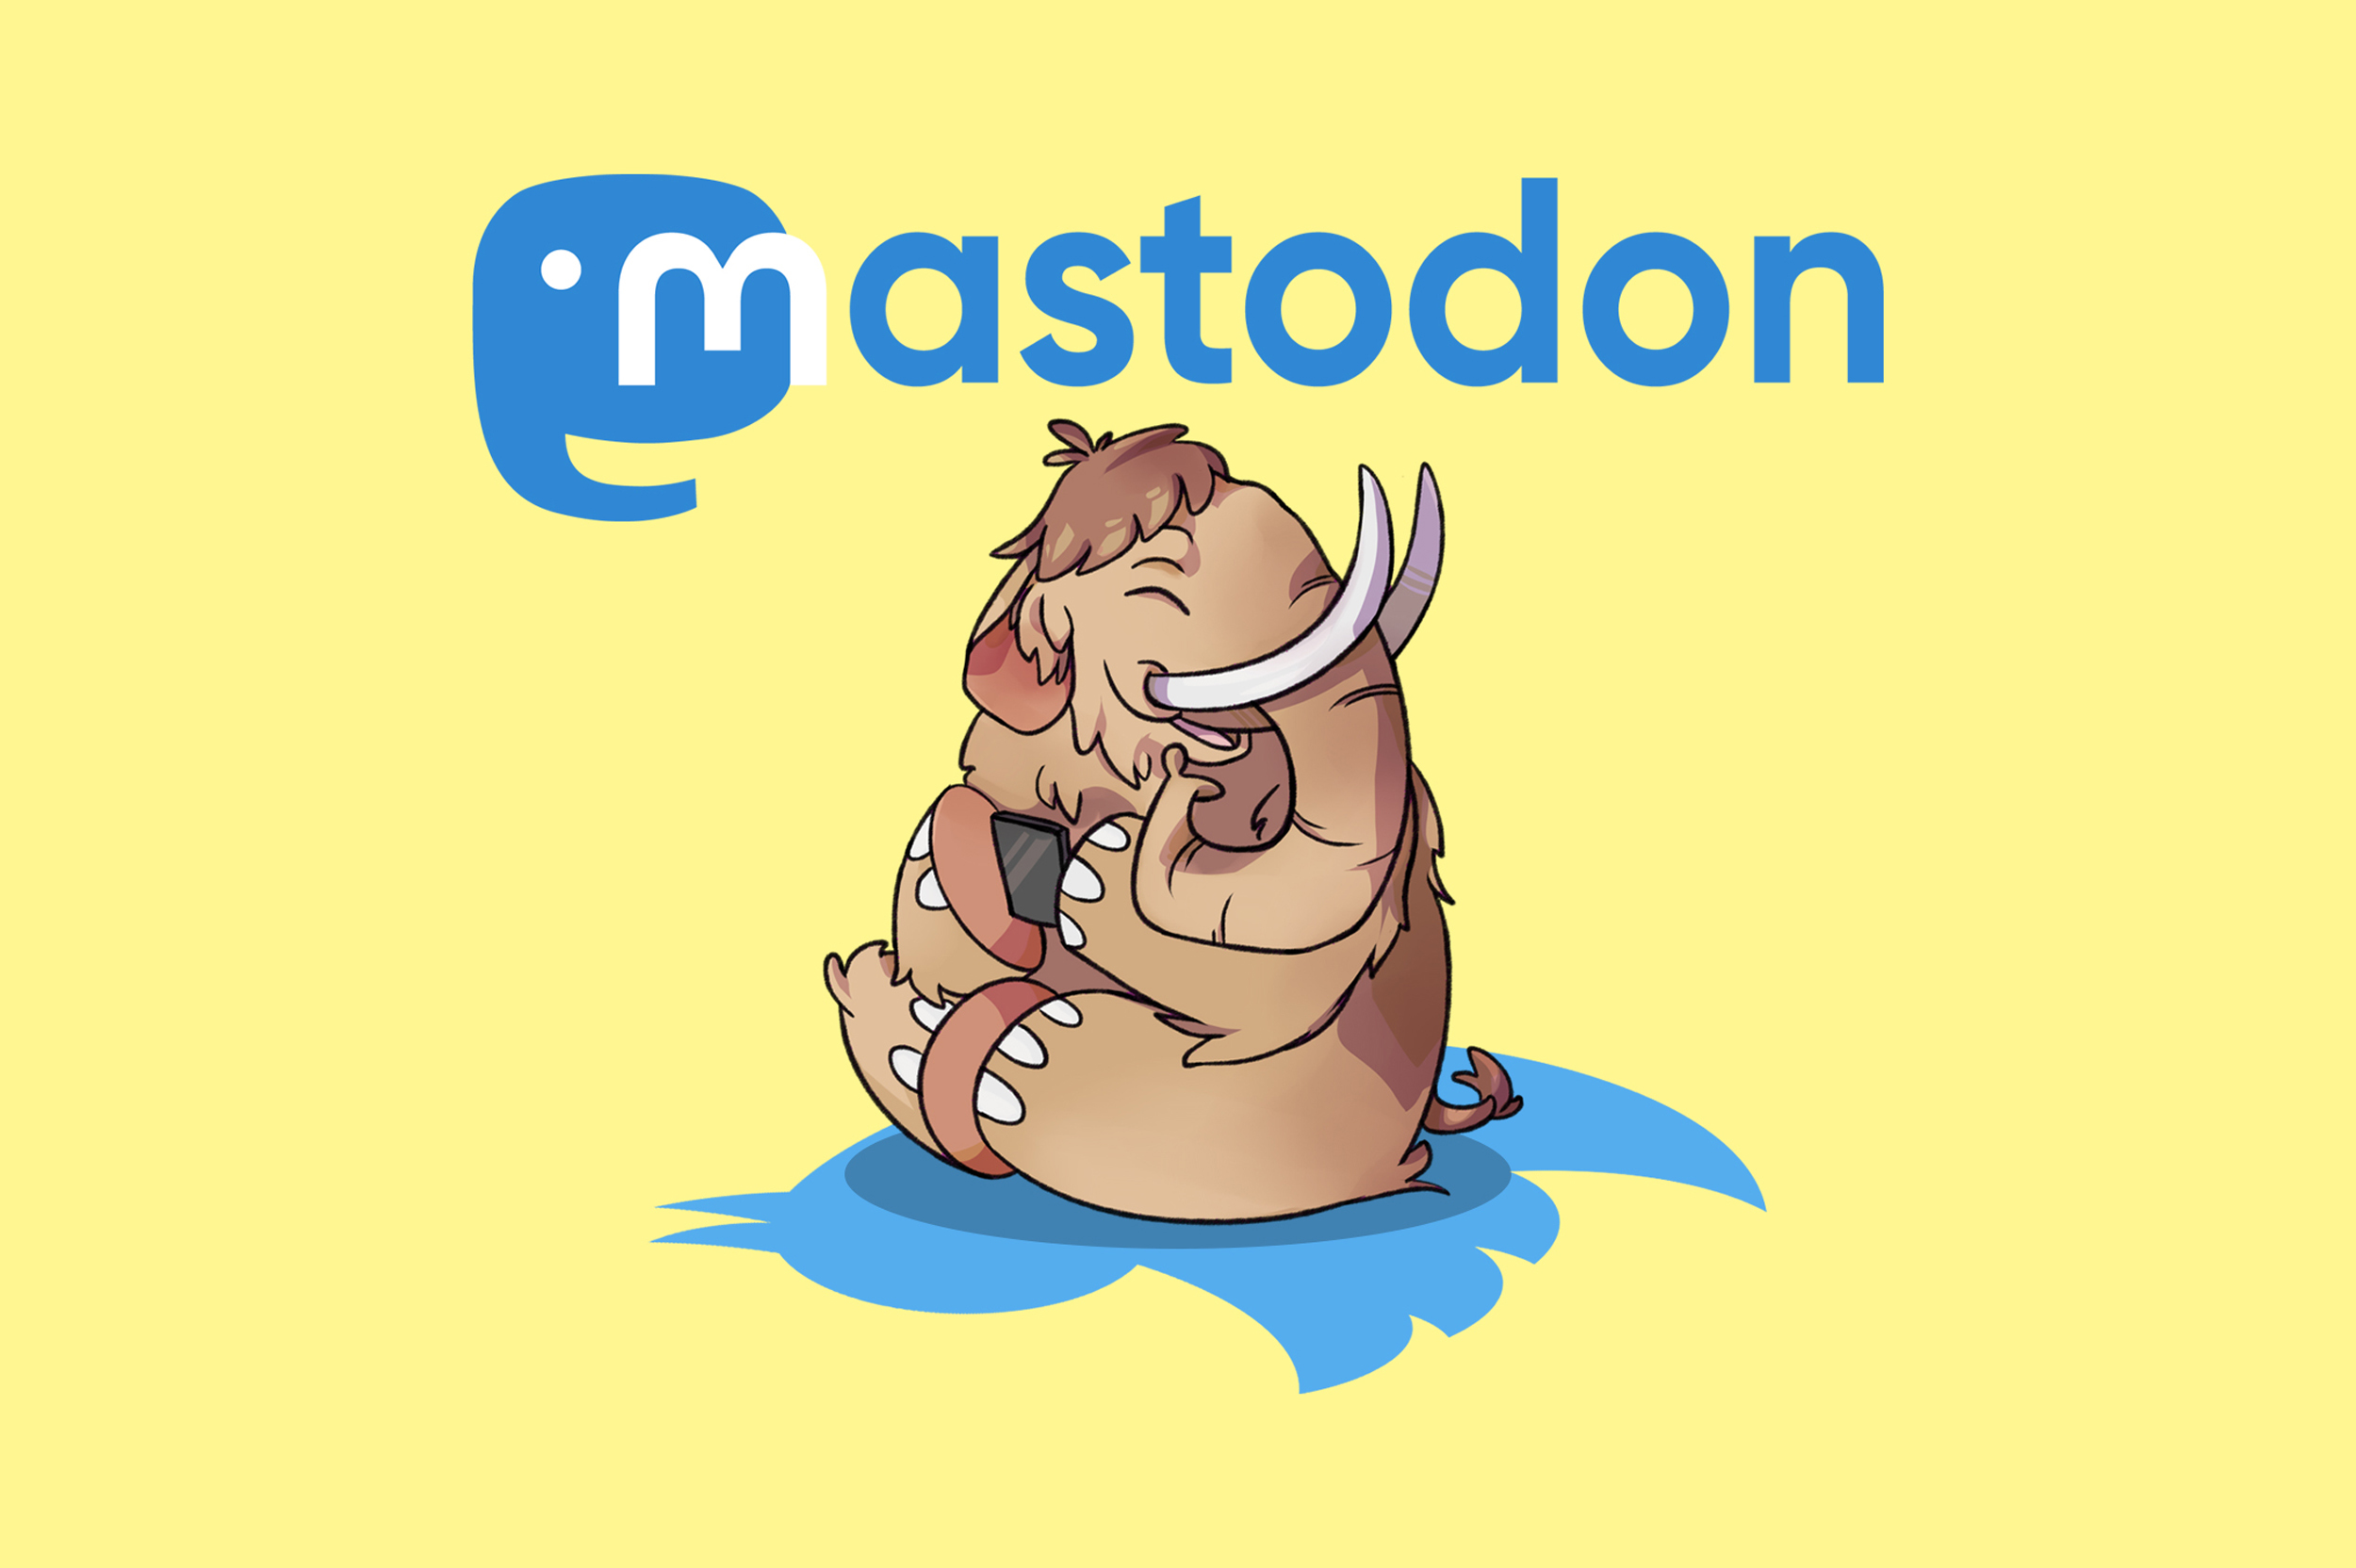 Ja sóc a Mastodon, i ara què?